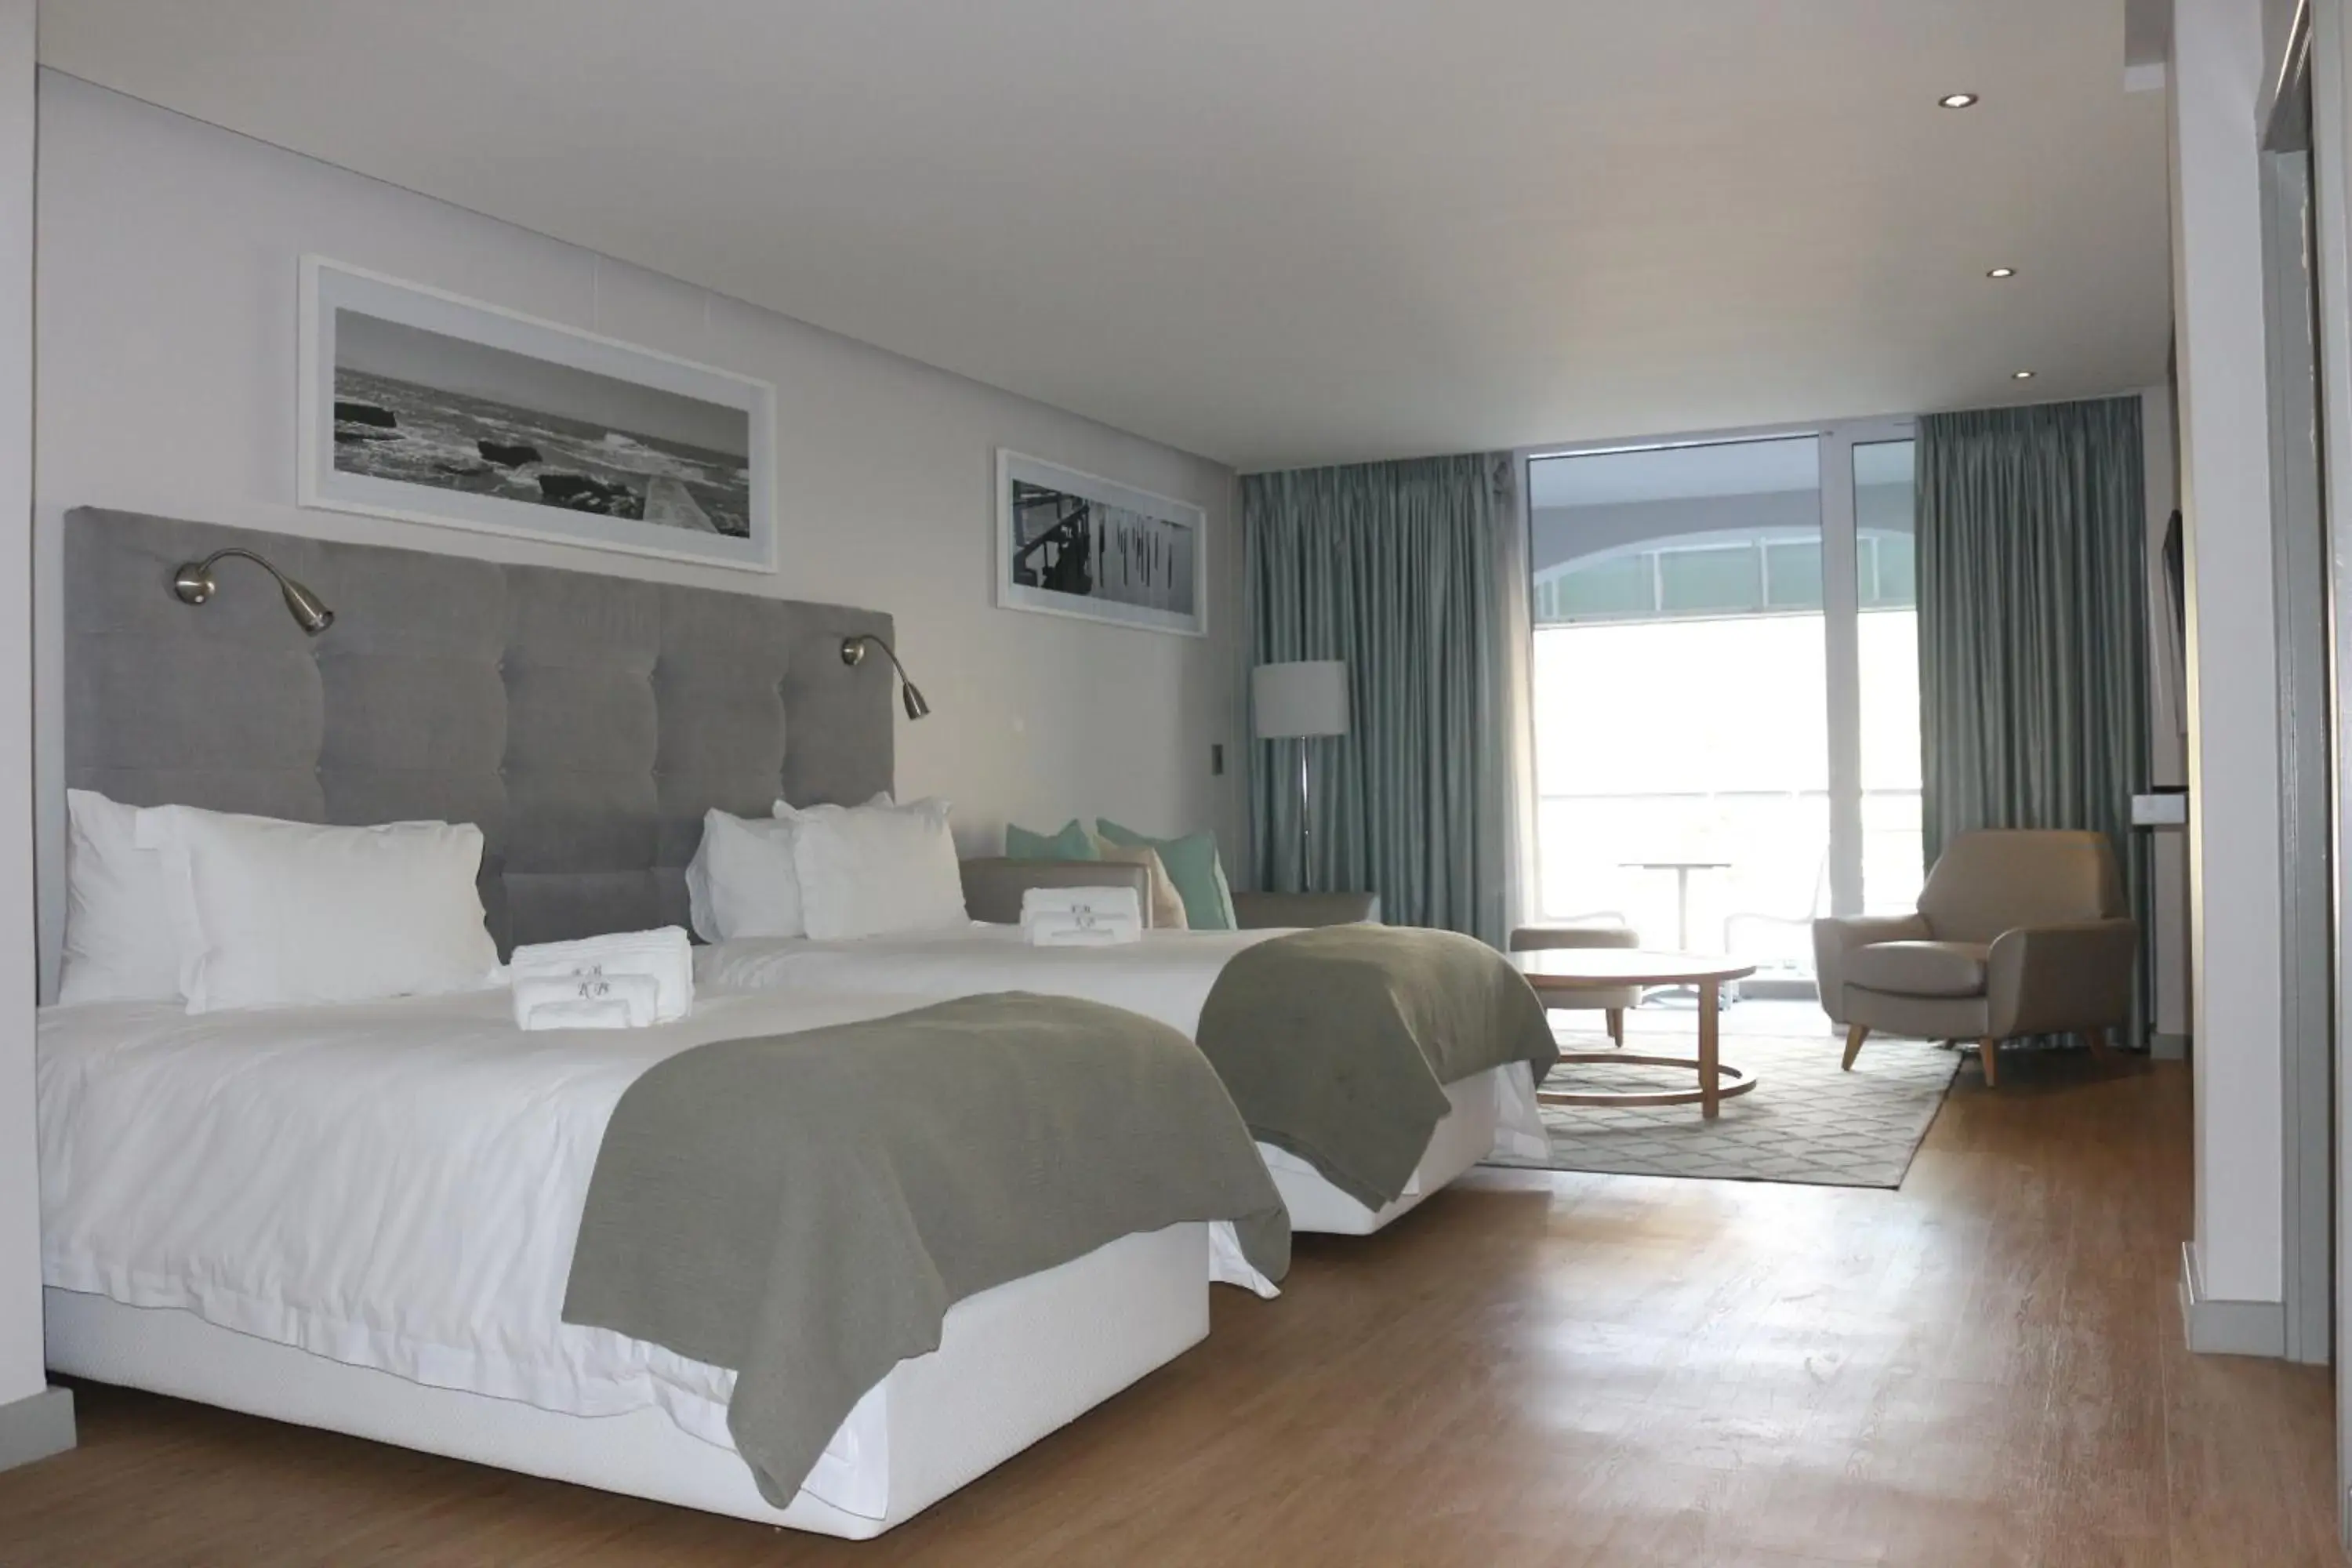 Bed, Room Photo in Krystal Beach Hotel